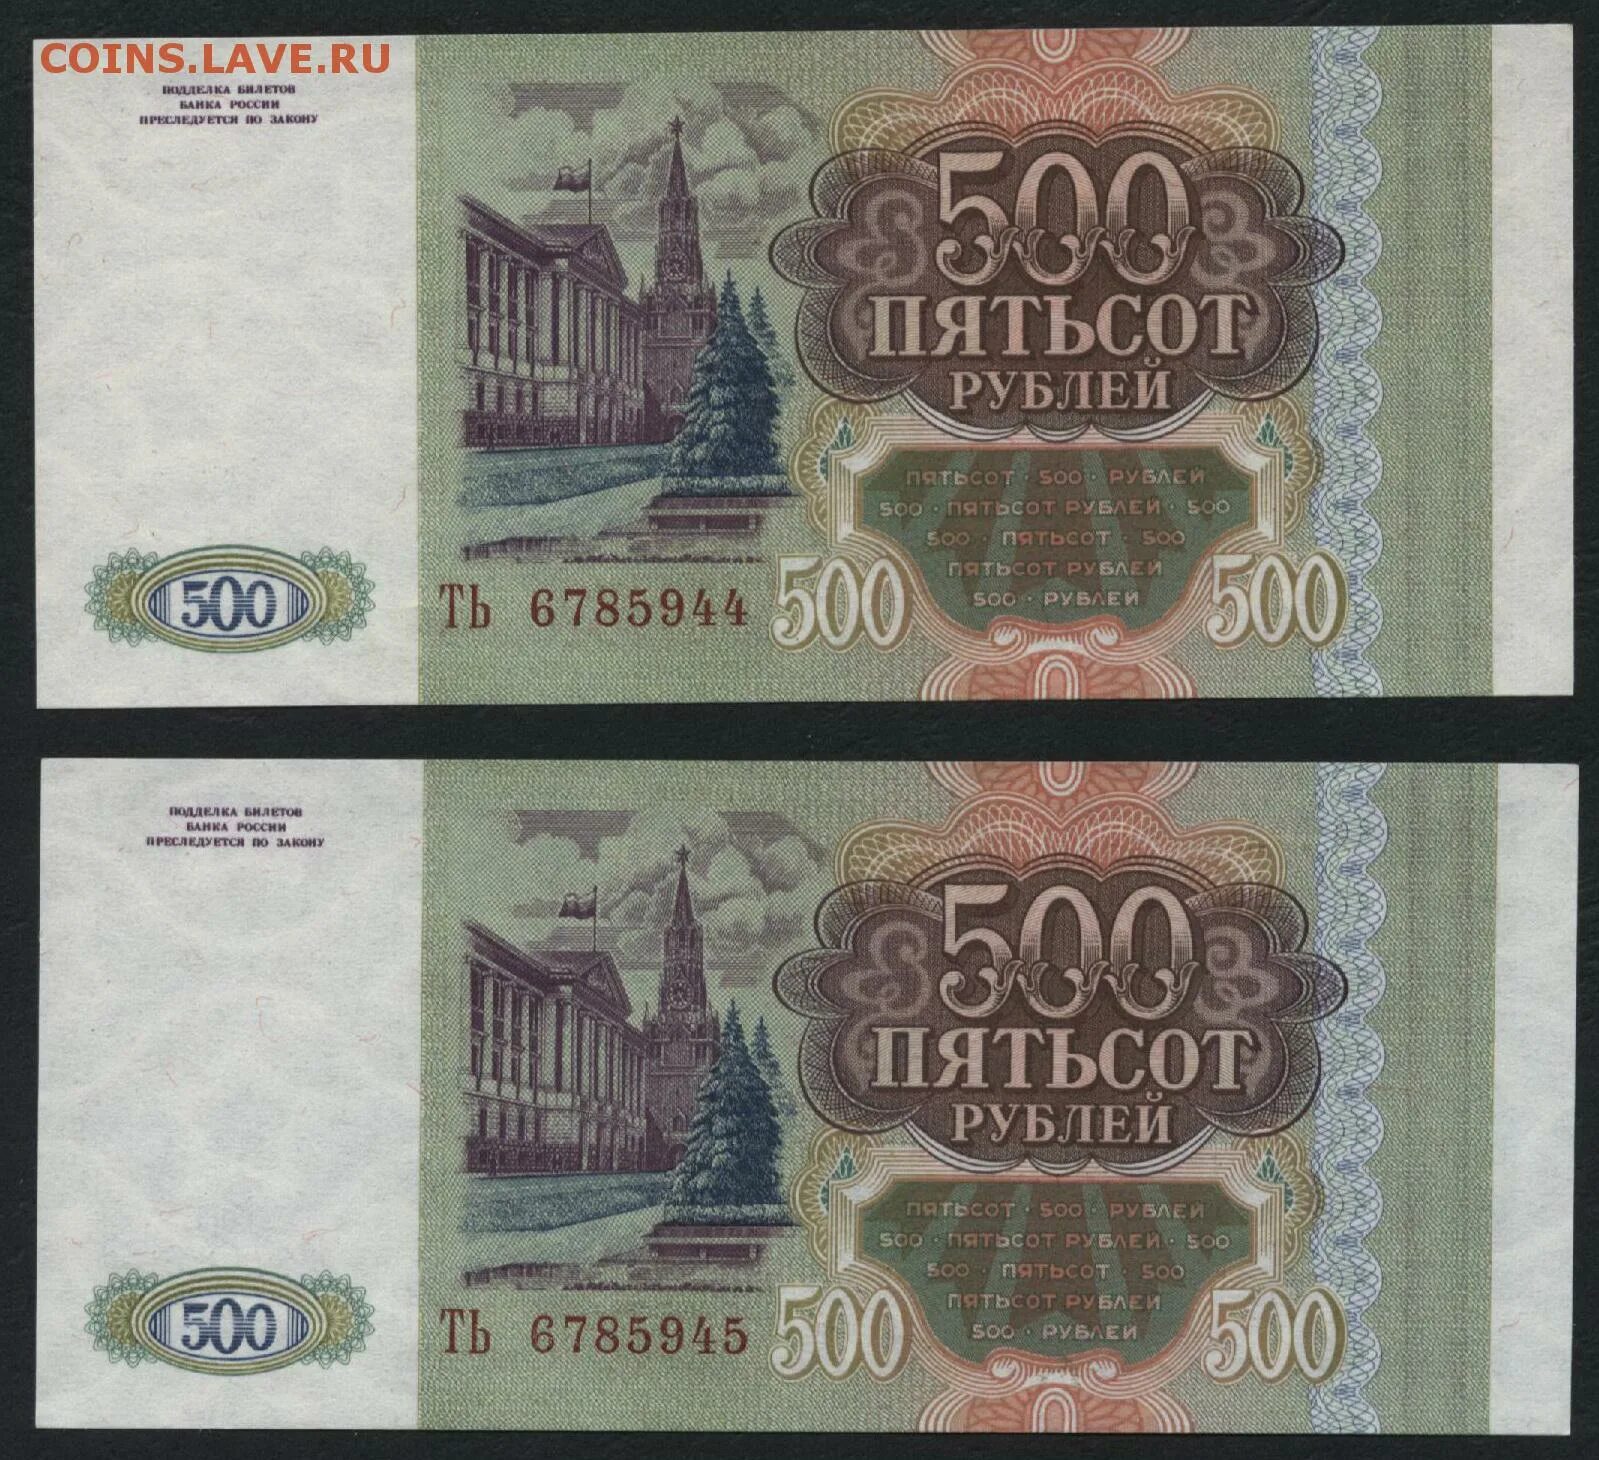 9 500 в рублях. 500 Рублей. 500 Рублей 1993. Пятьсот рублей 1993. 500 Рублей 1993 года.